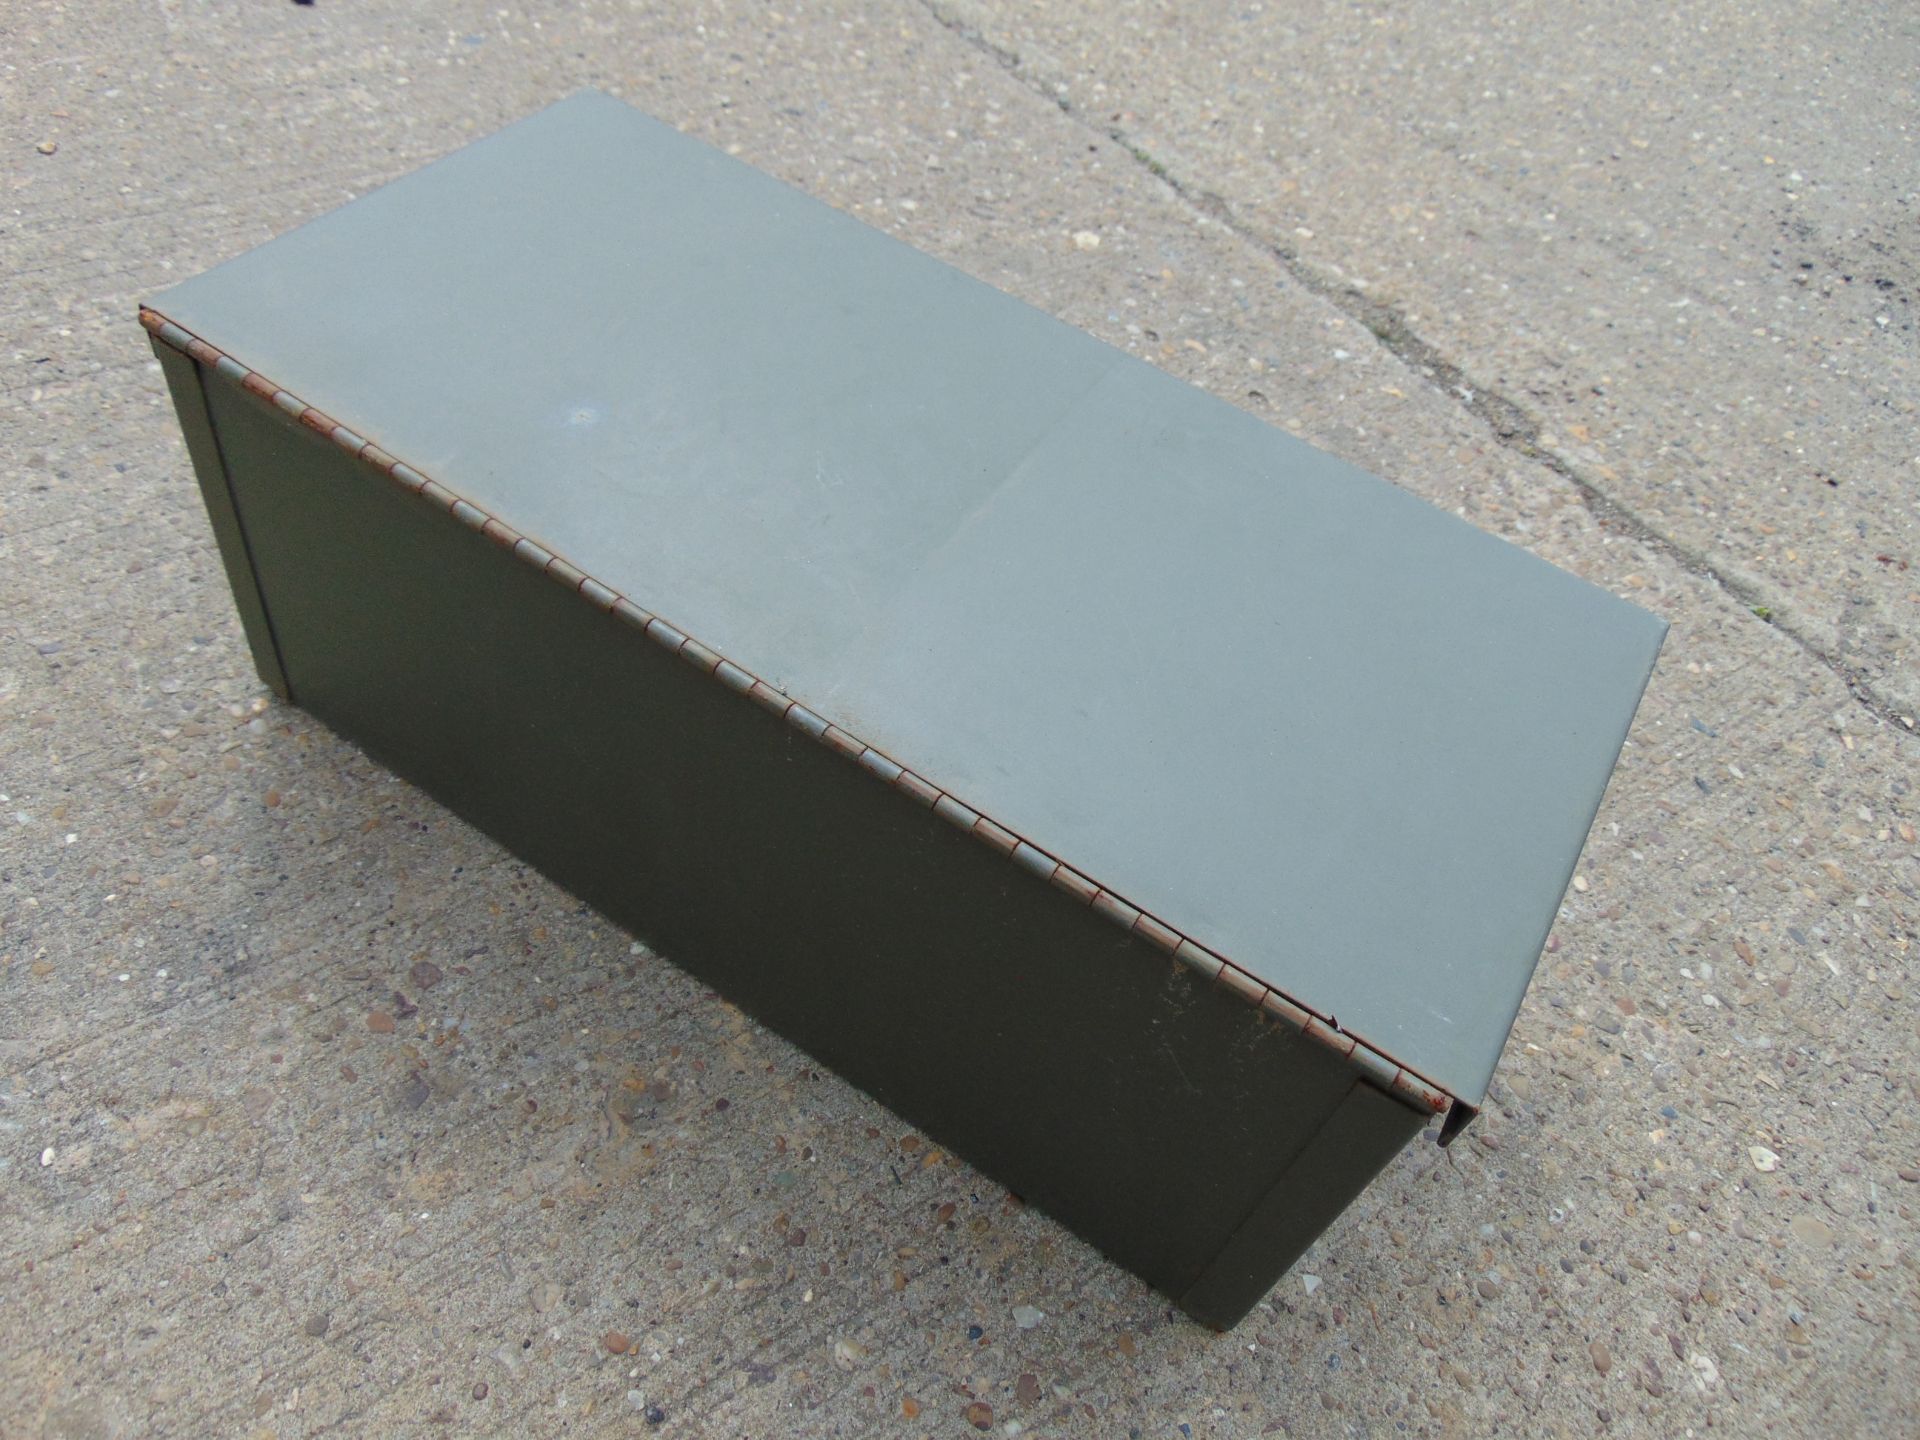 Unissued Vehicle Tool Stowage Box - Image 3 of 3